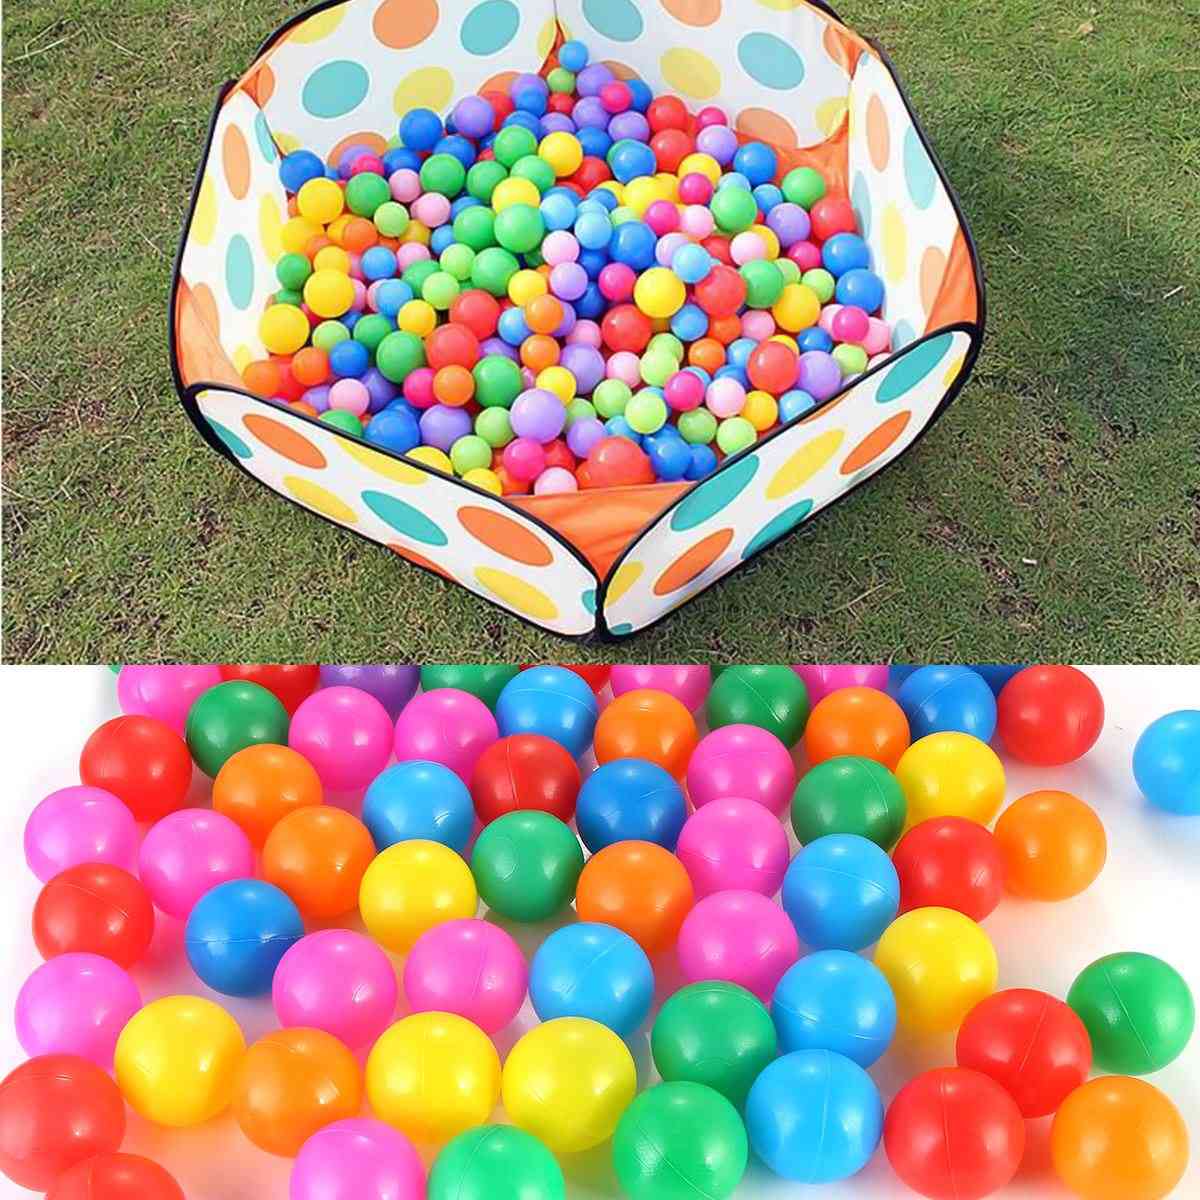 100pcs 4cm Farben Baby Plastikbälle - Wasserpool Ozeanwellenball, Kinder schwimmen Grube mit Basketballkorb Spielhaus im Freien Zelte Spielzeug (4cm) -